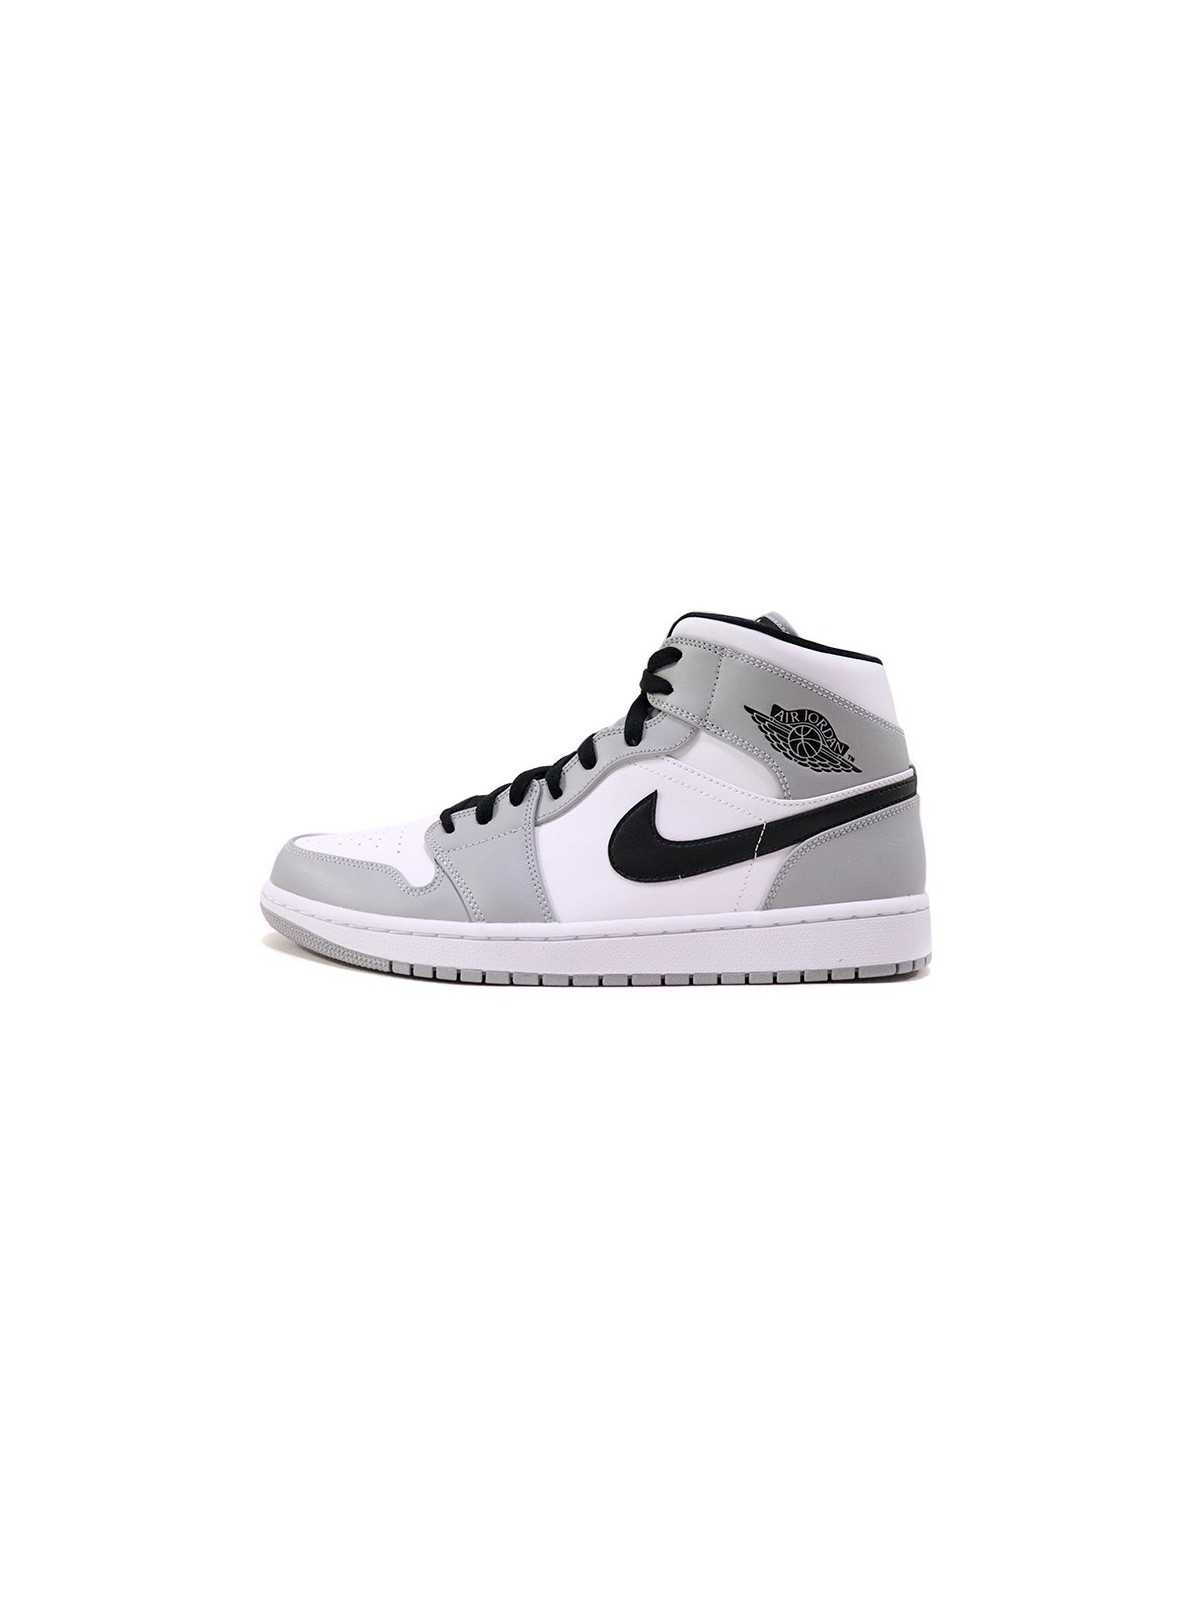 Nike Air Jordan 1 MId Grey